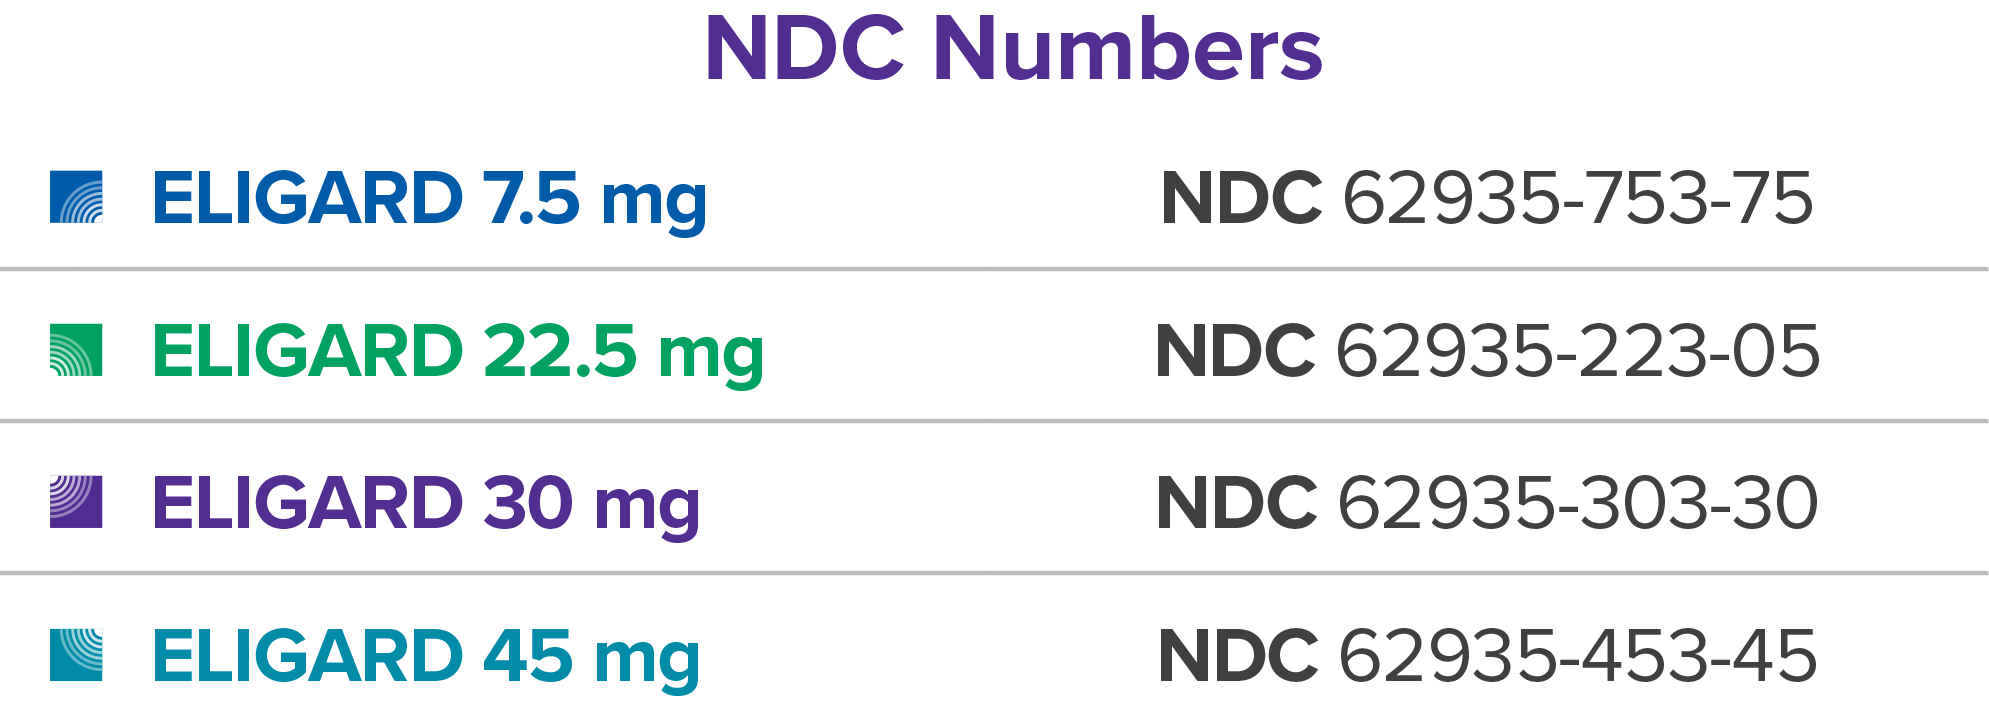 NDC Numbers